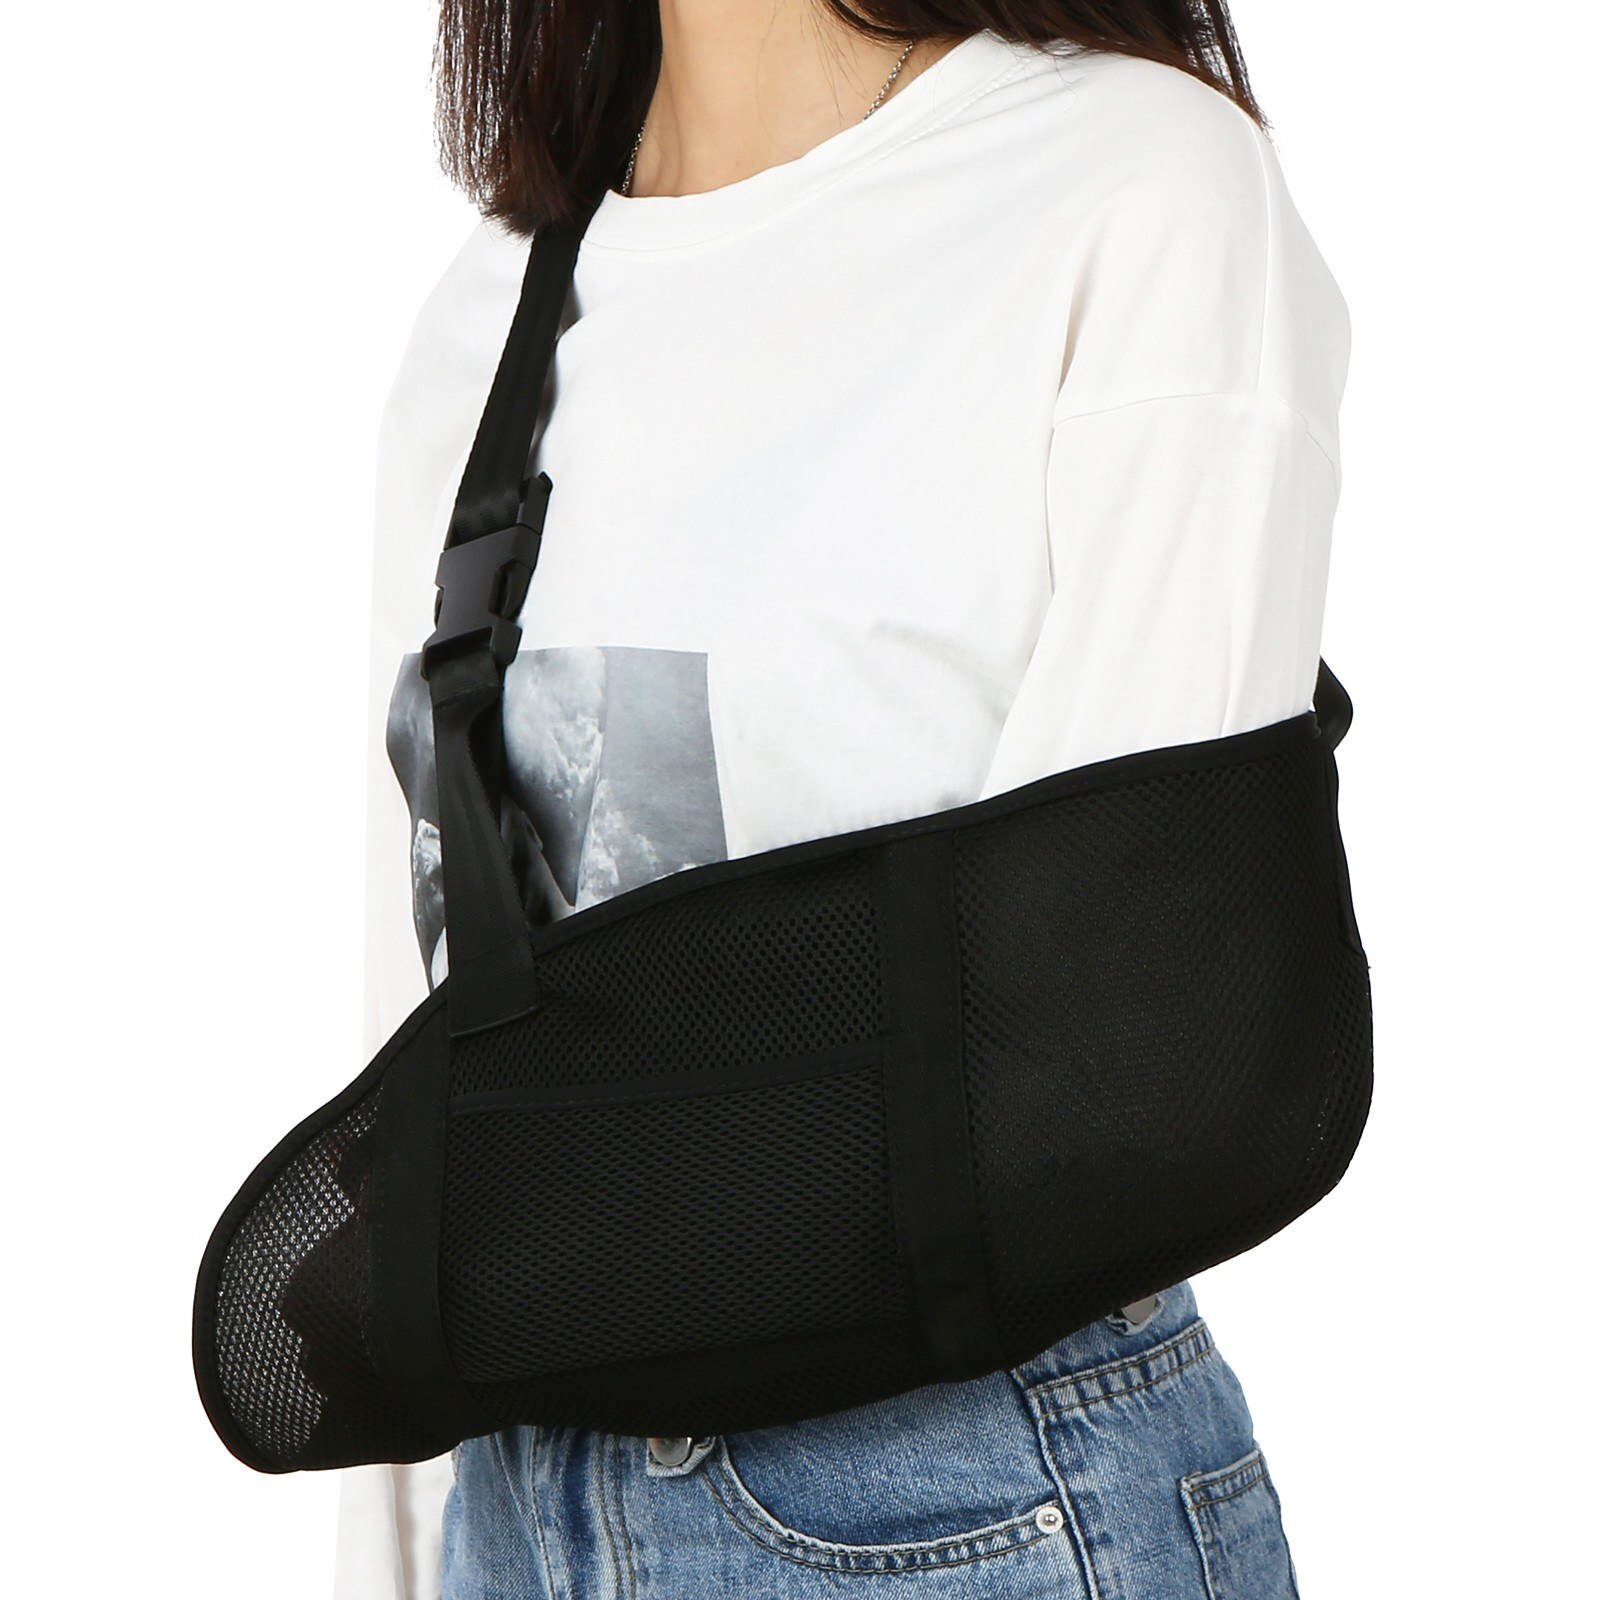 Adjustable Breathable Arm Sling Lightweight Arm Wrist Fracture Support Strap Elbow Mesh Shoulder Protector Shoulder